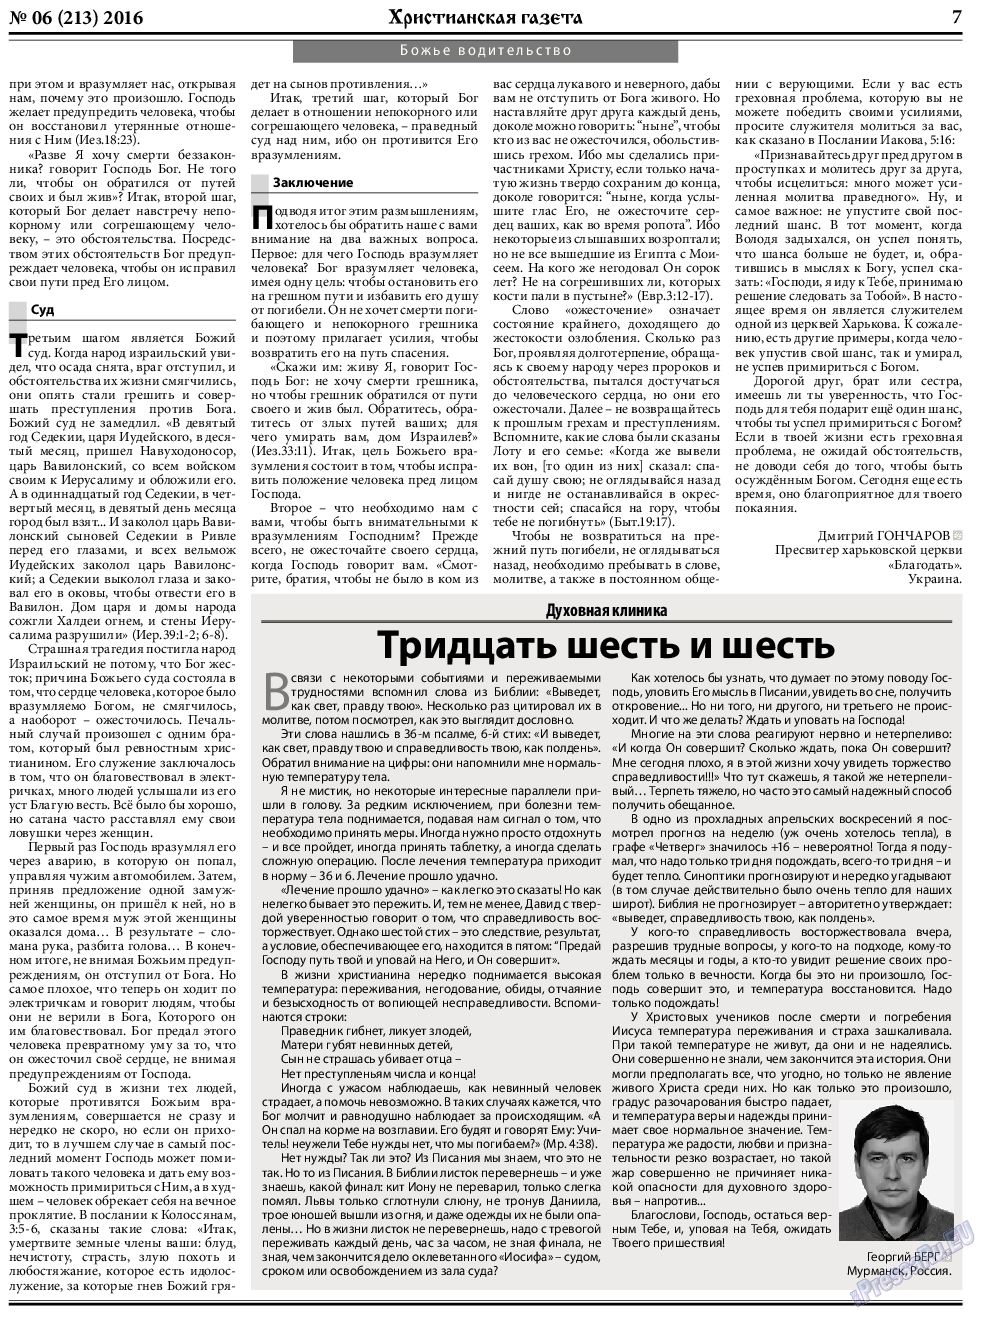 Христианская газета, газета. 2016 №6 стр.7